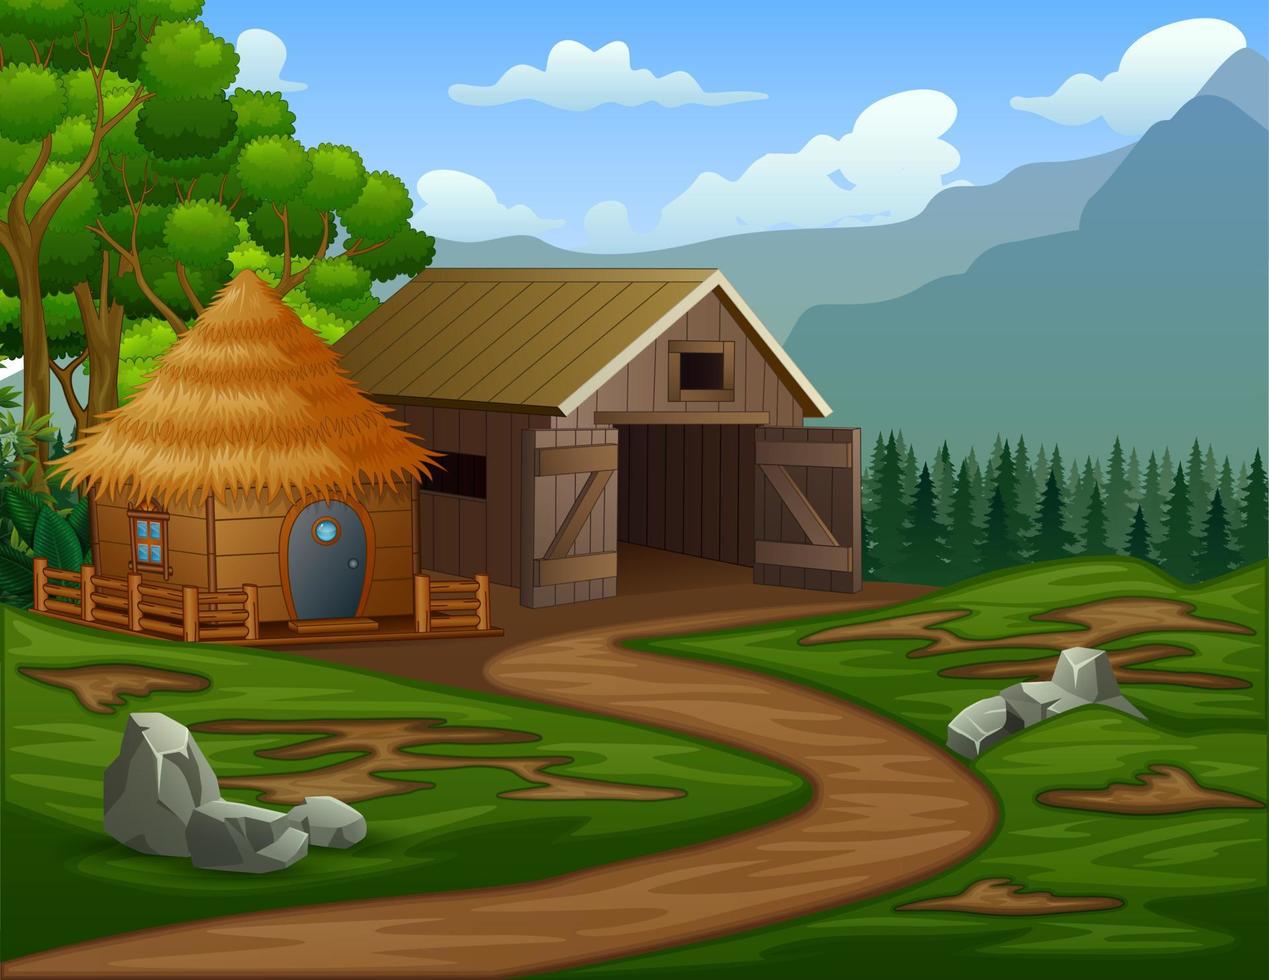 Cartoon barn house with a cabin in the farmland vector